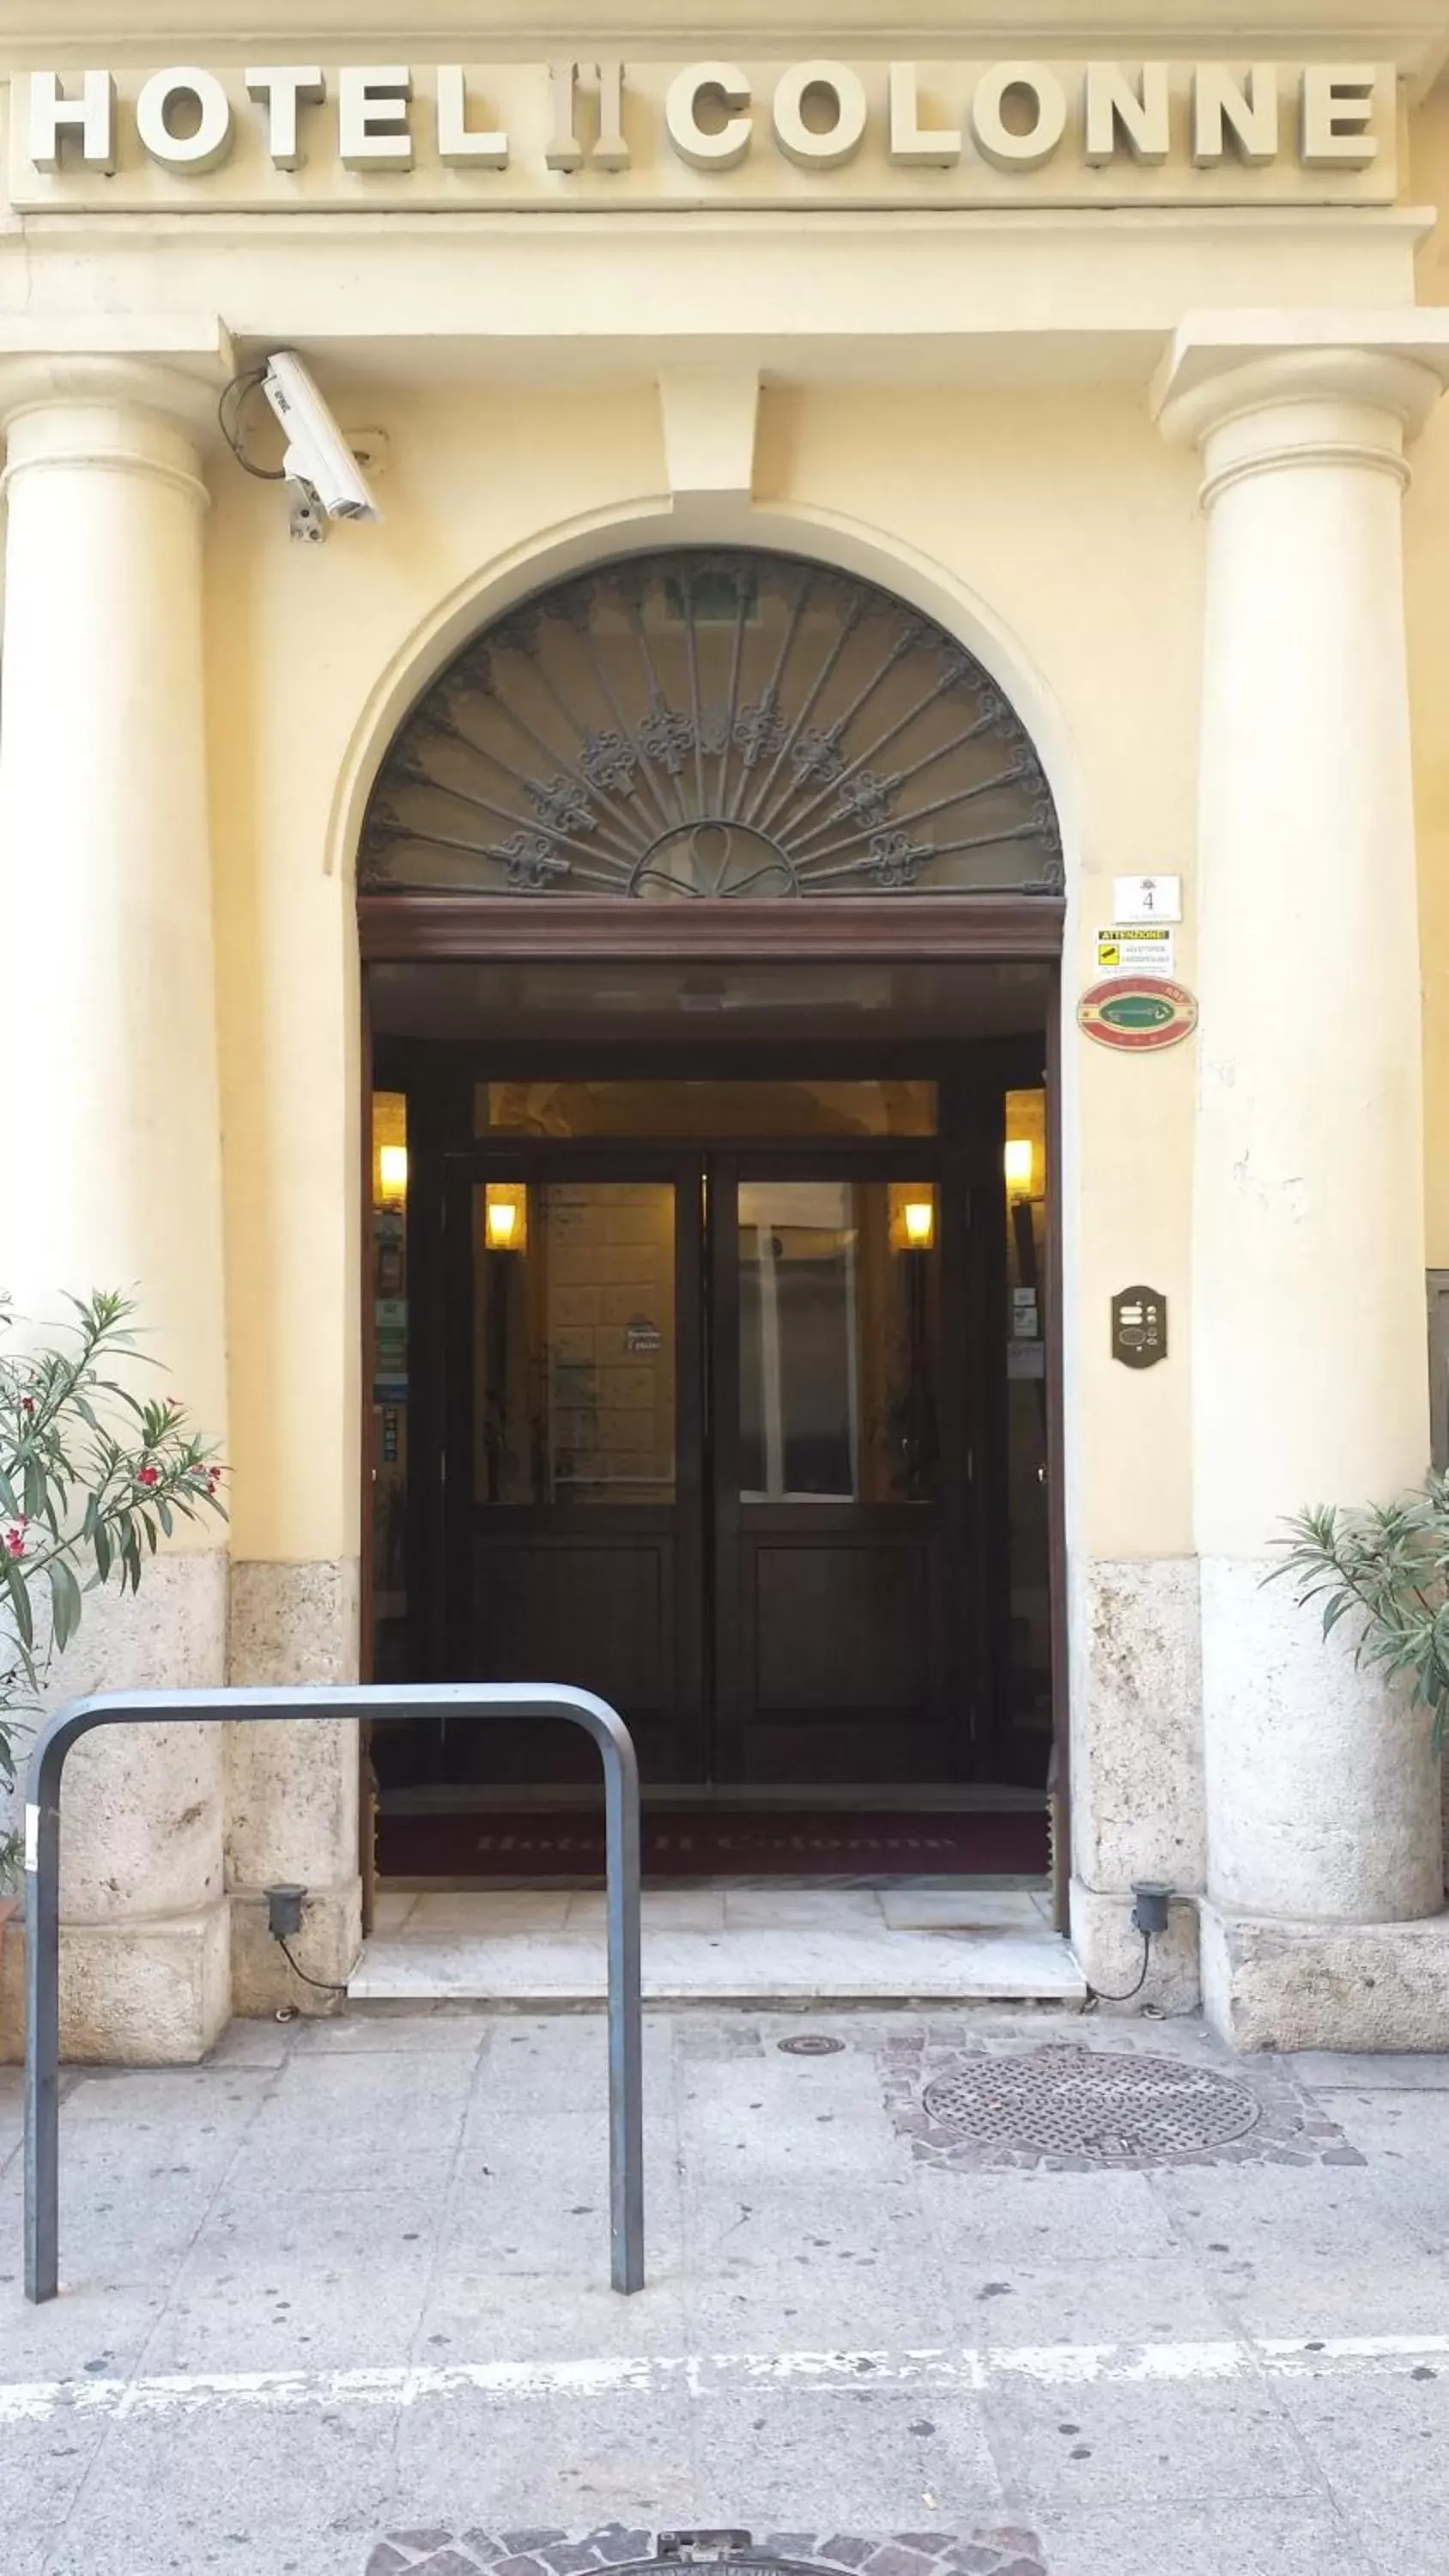 Facade/entrance in Hotel Due Colonne